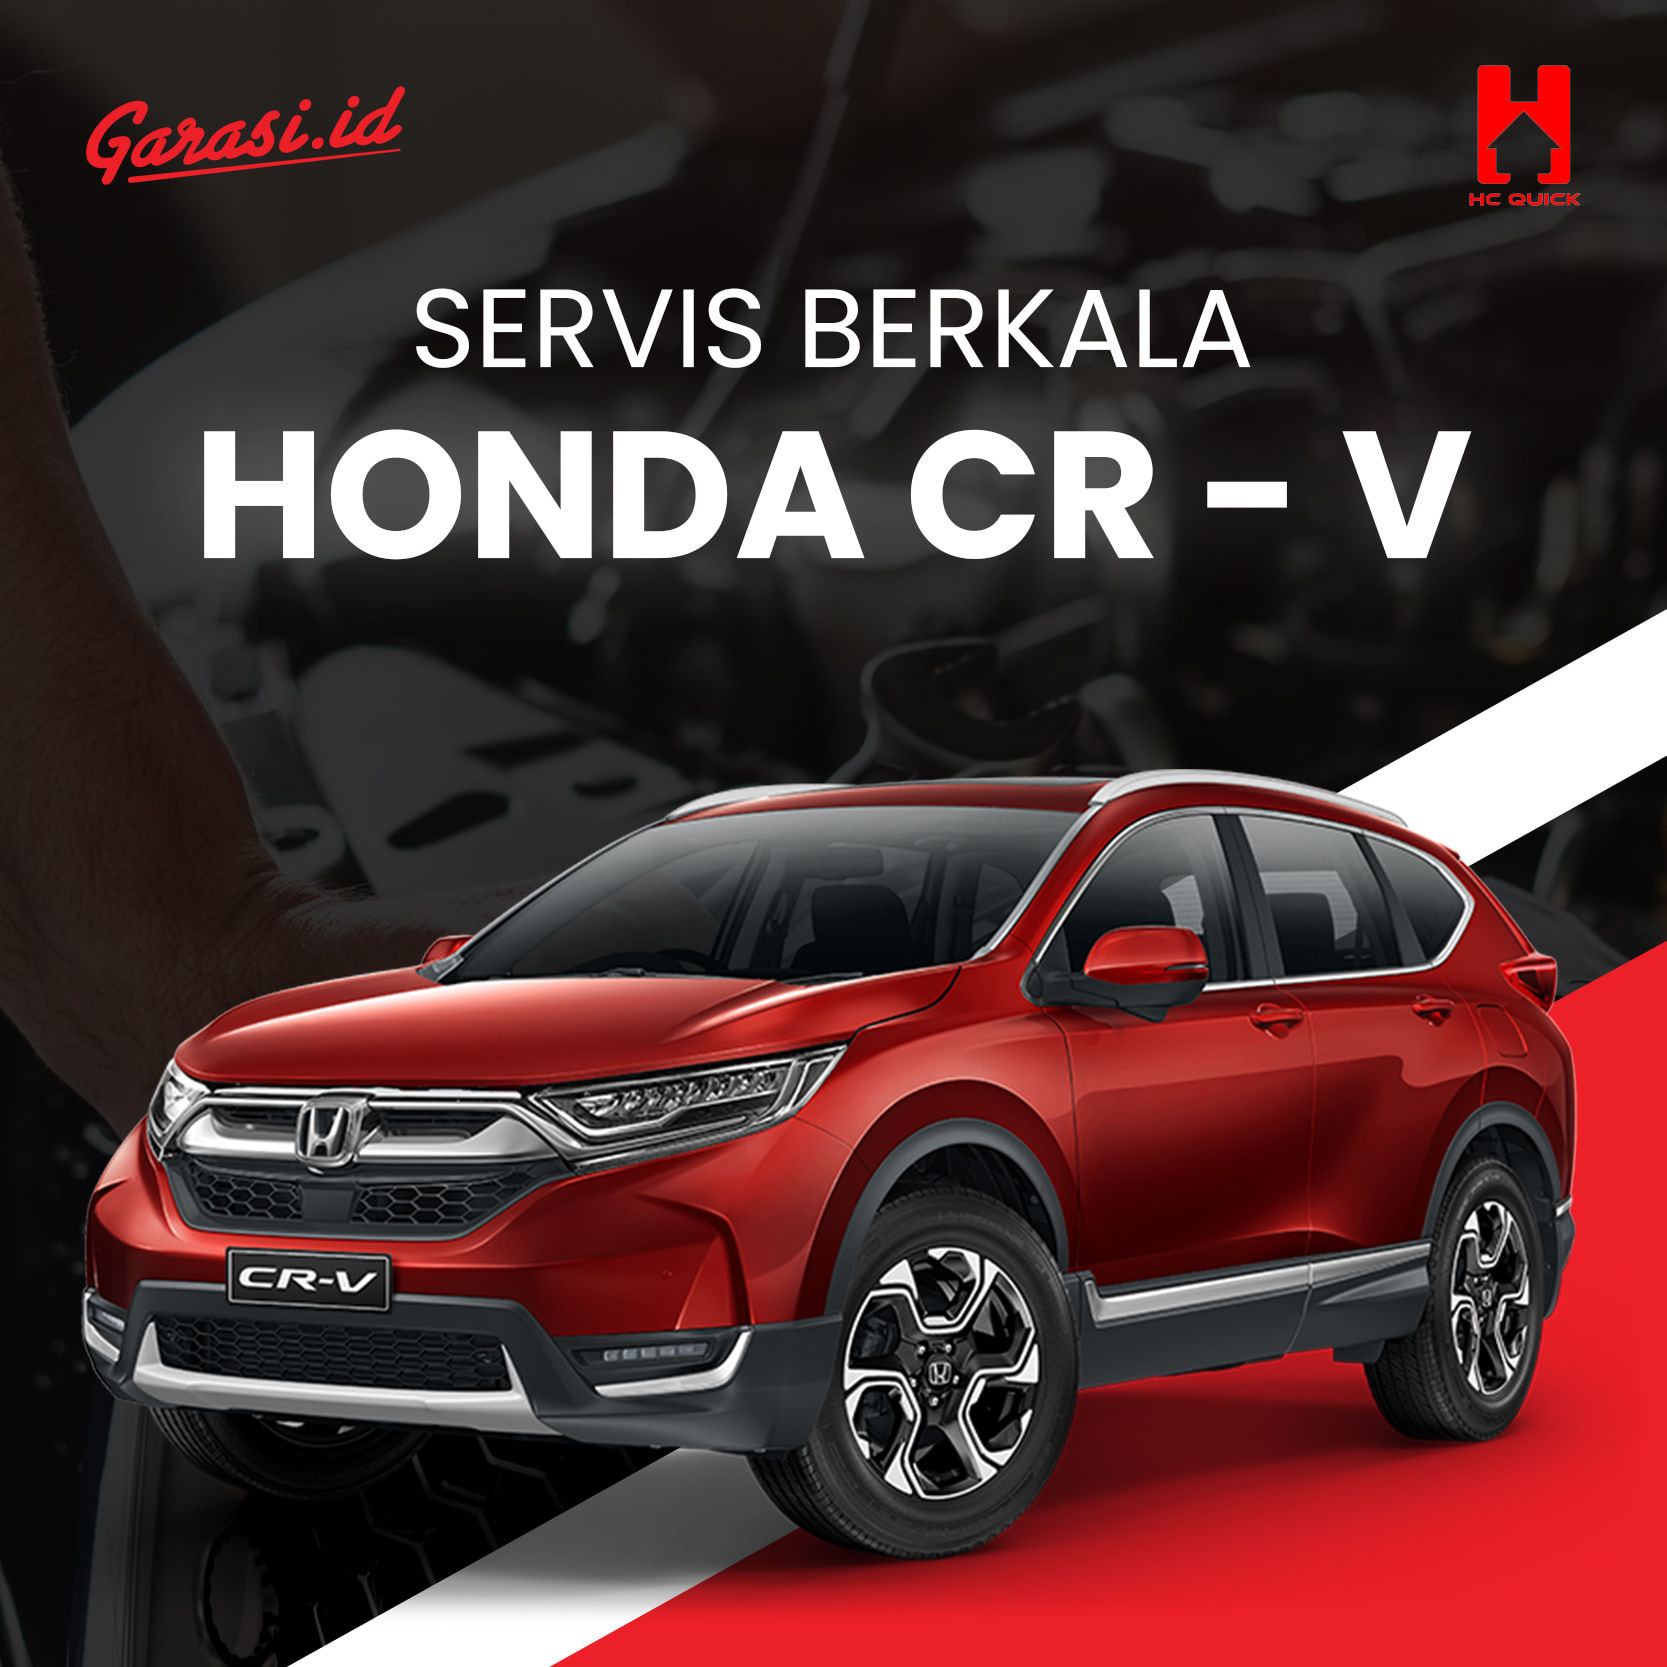 Paket perawatan service berkala Honda CR-V